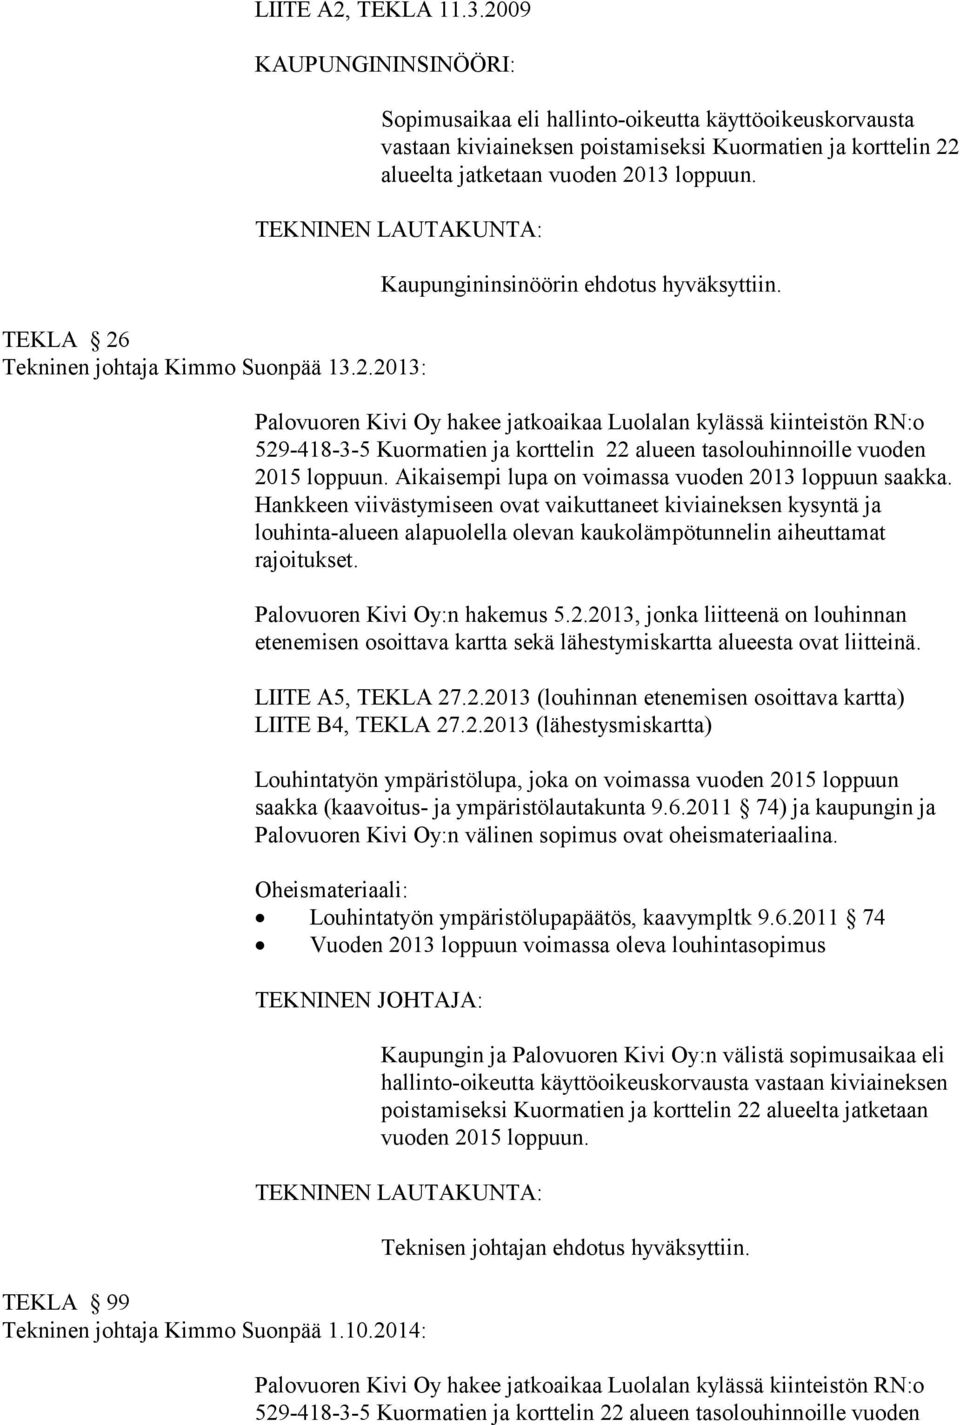 TEKLA 26 Tekninen johtaja Kimmo Suonpää 13.2.2013: Kaupungininsinöörin ehdotus hyväksyttiin.